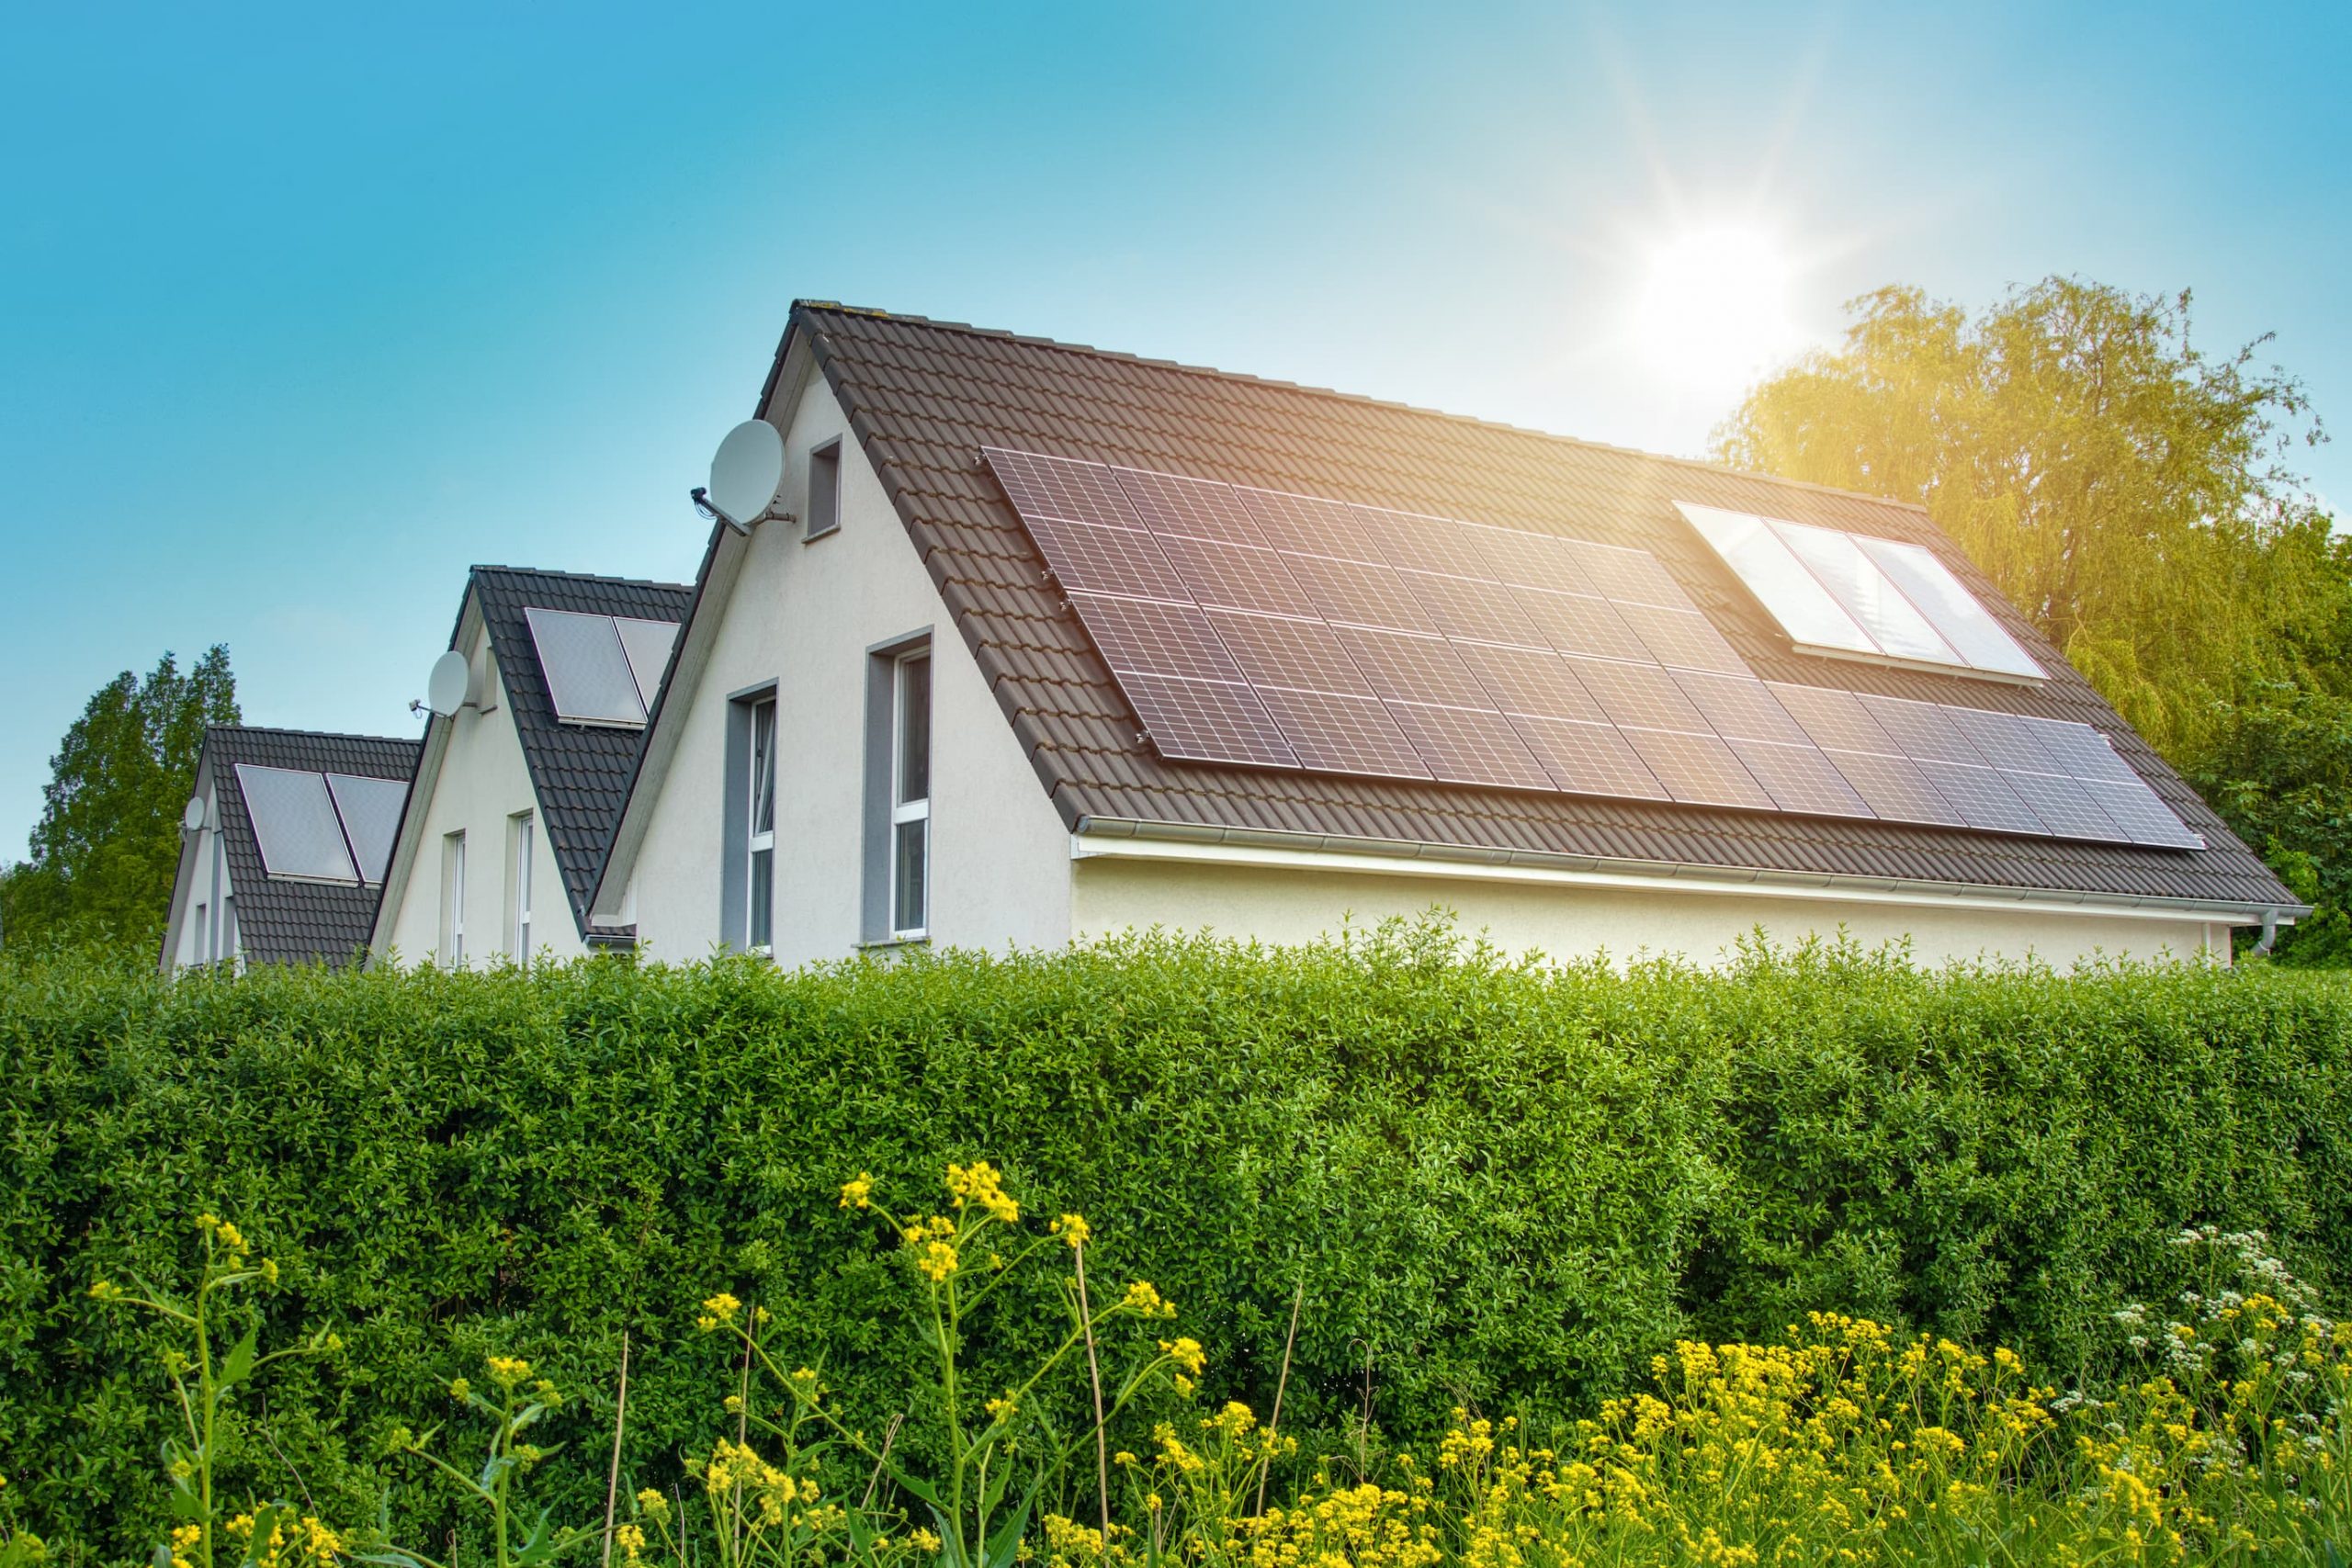 Lire la suite à propos de l’article Système photovoltaïque : les faux mythes à clarifier